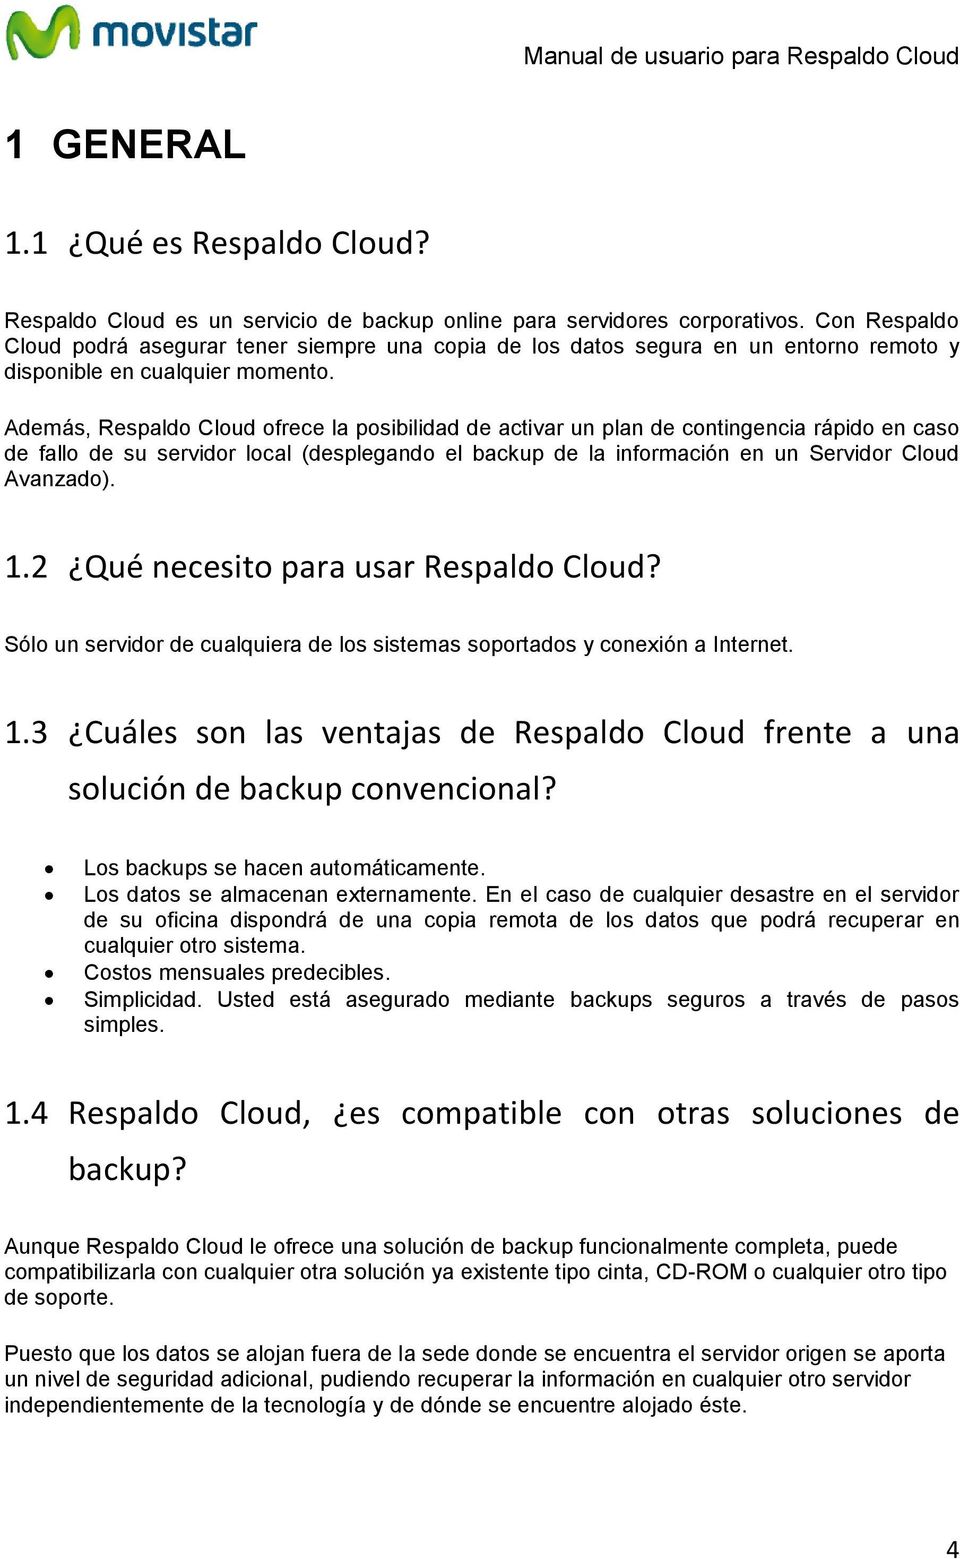 Además, Respaldo Cloud ofrece la posibilidad de activar un plan de contingencia rápido en caso de fallo de su servidor local (desplegando el backup de la información en un Servidor Cloud Avanzado). 1.